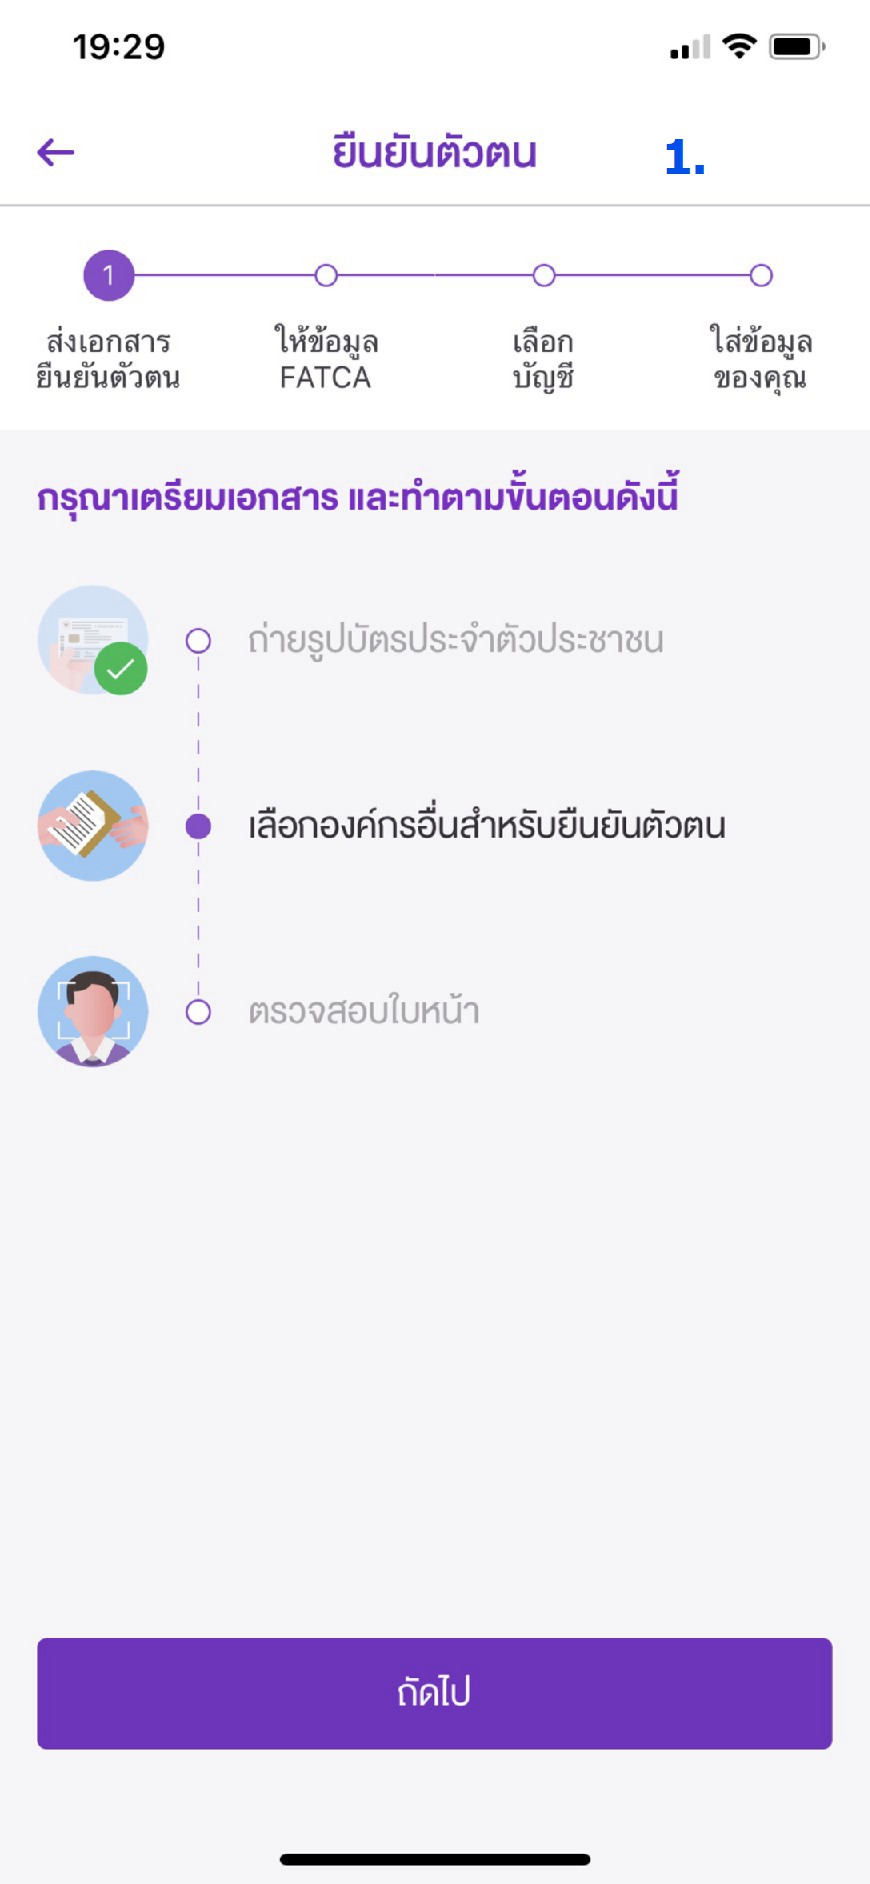 เปิดบัญชีธนาคารไทยพาณิชย์ออนไลน์ไม่ได้ครับ - Pantip